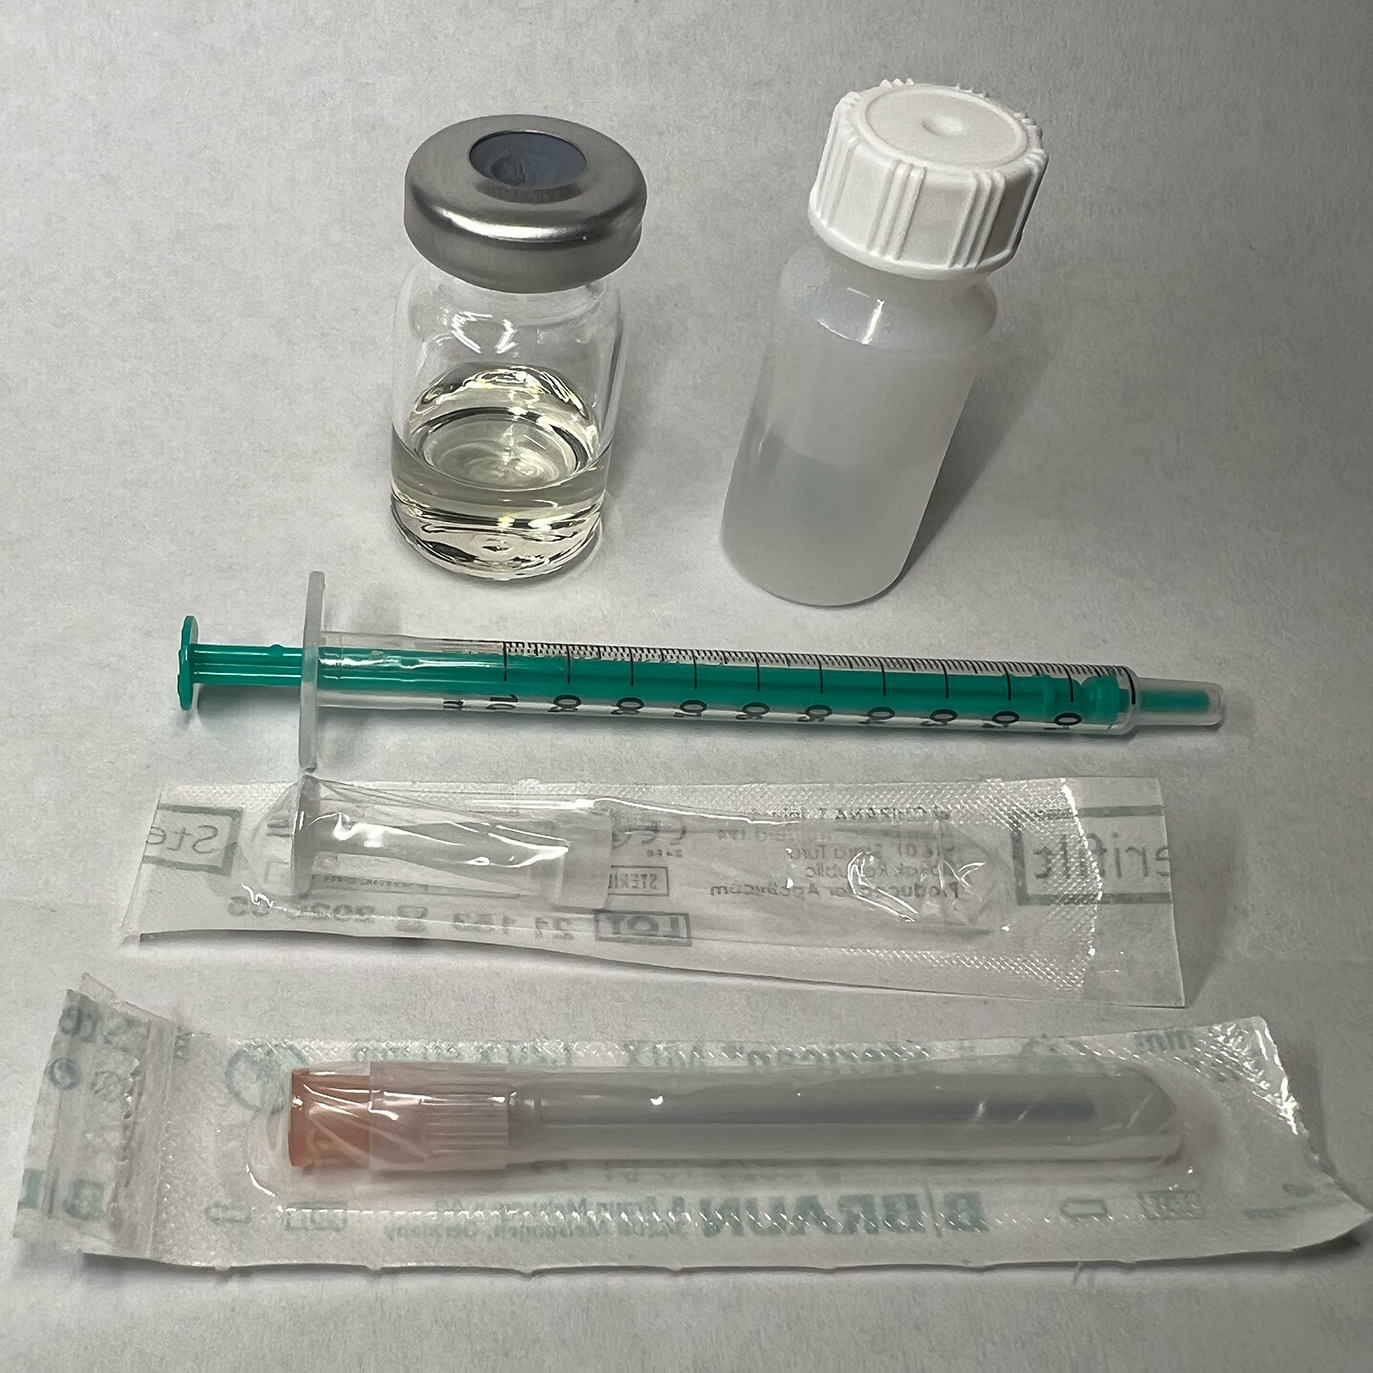 psilocybin-test-kit-materials